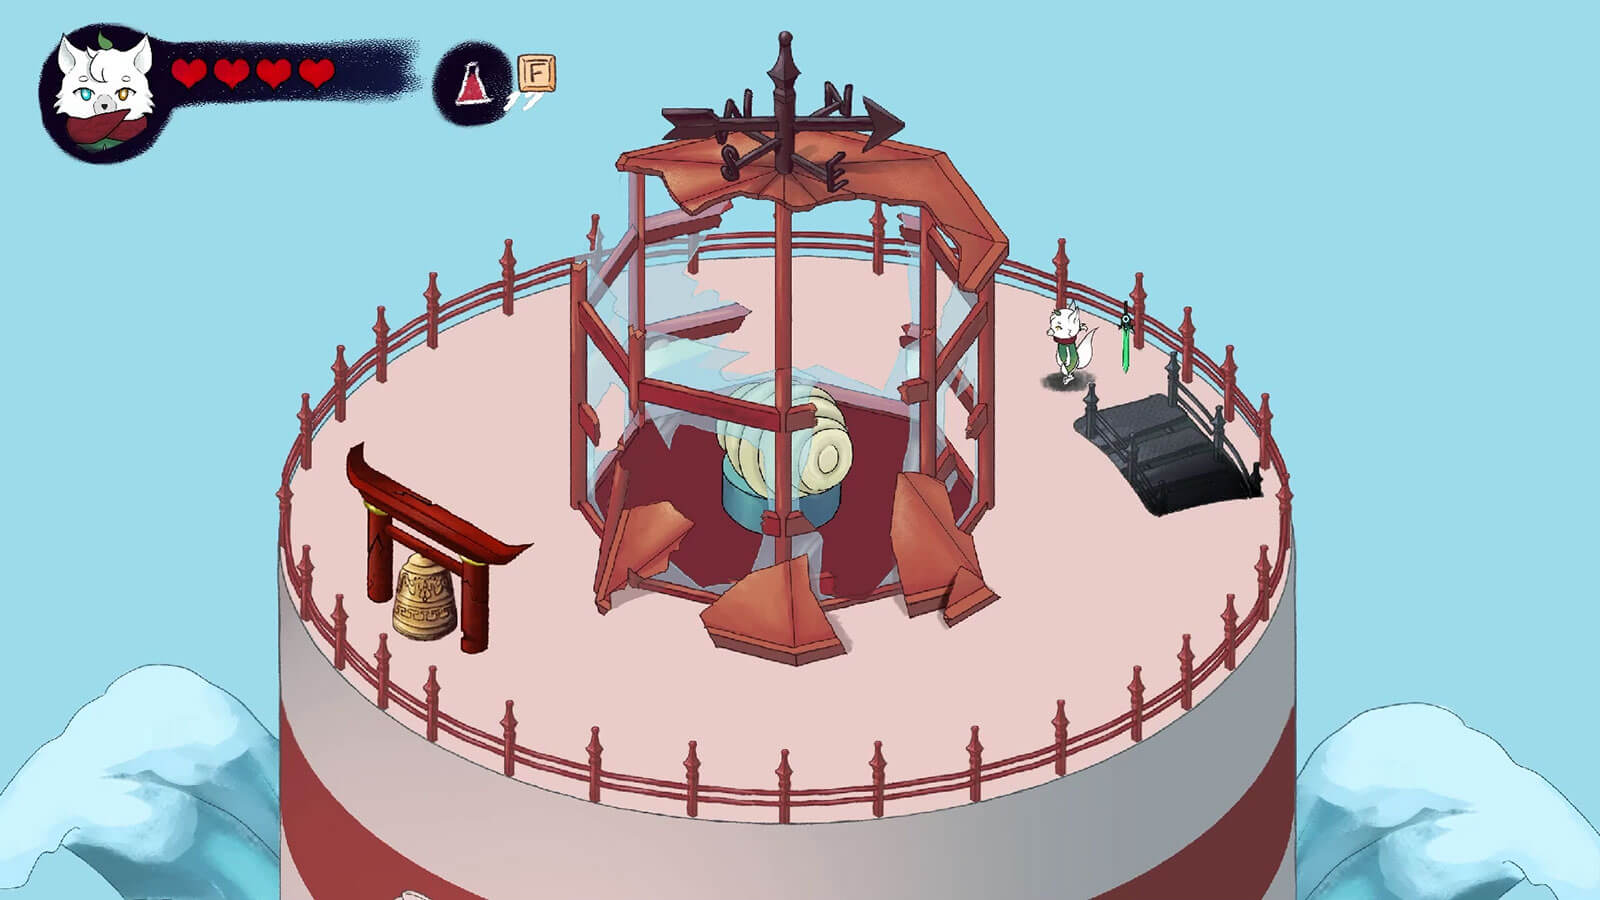 El personaje se encuentra en lo alto de una torre alta con un dispositivo rodeado de vidrios rotos en el centro.